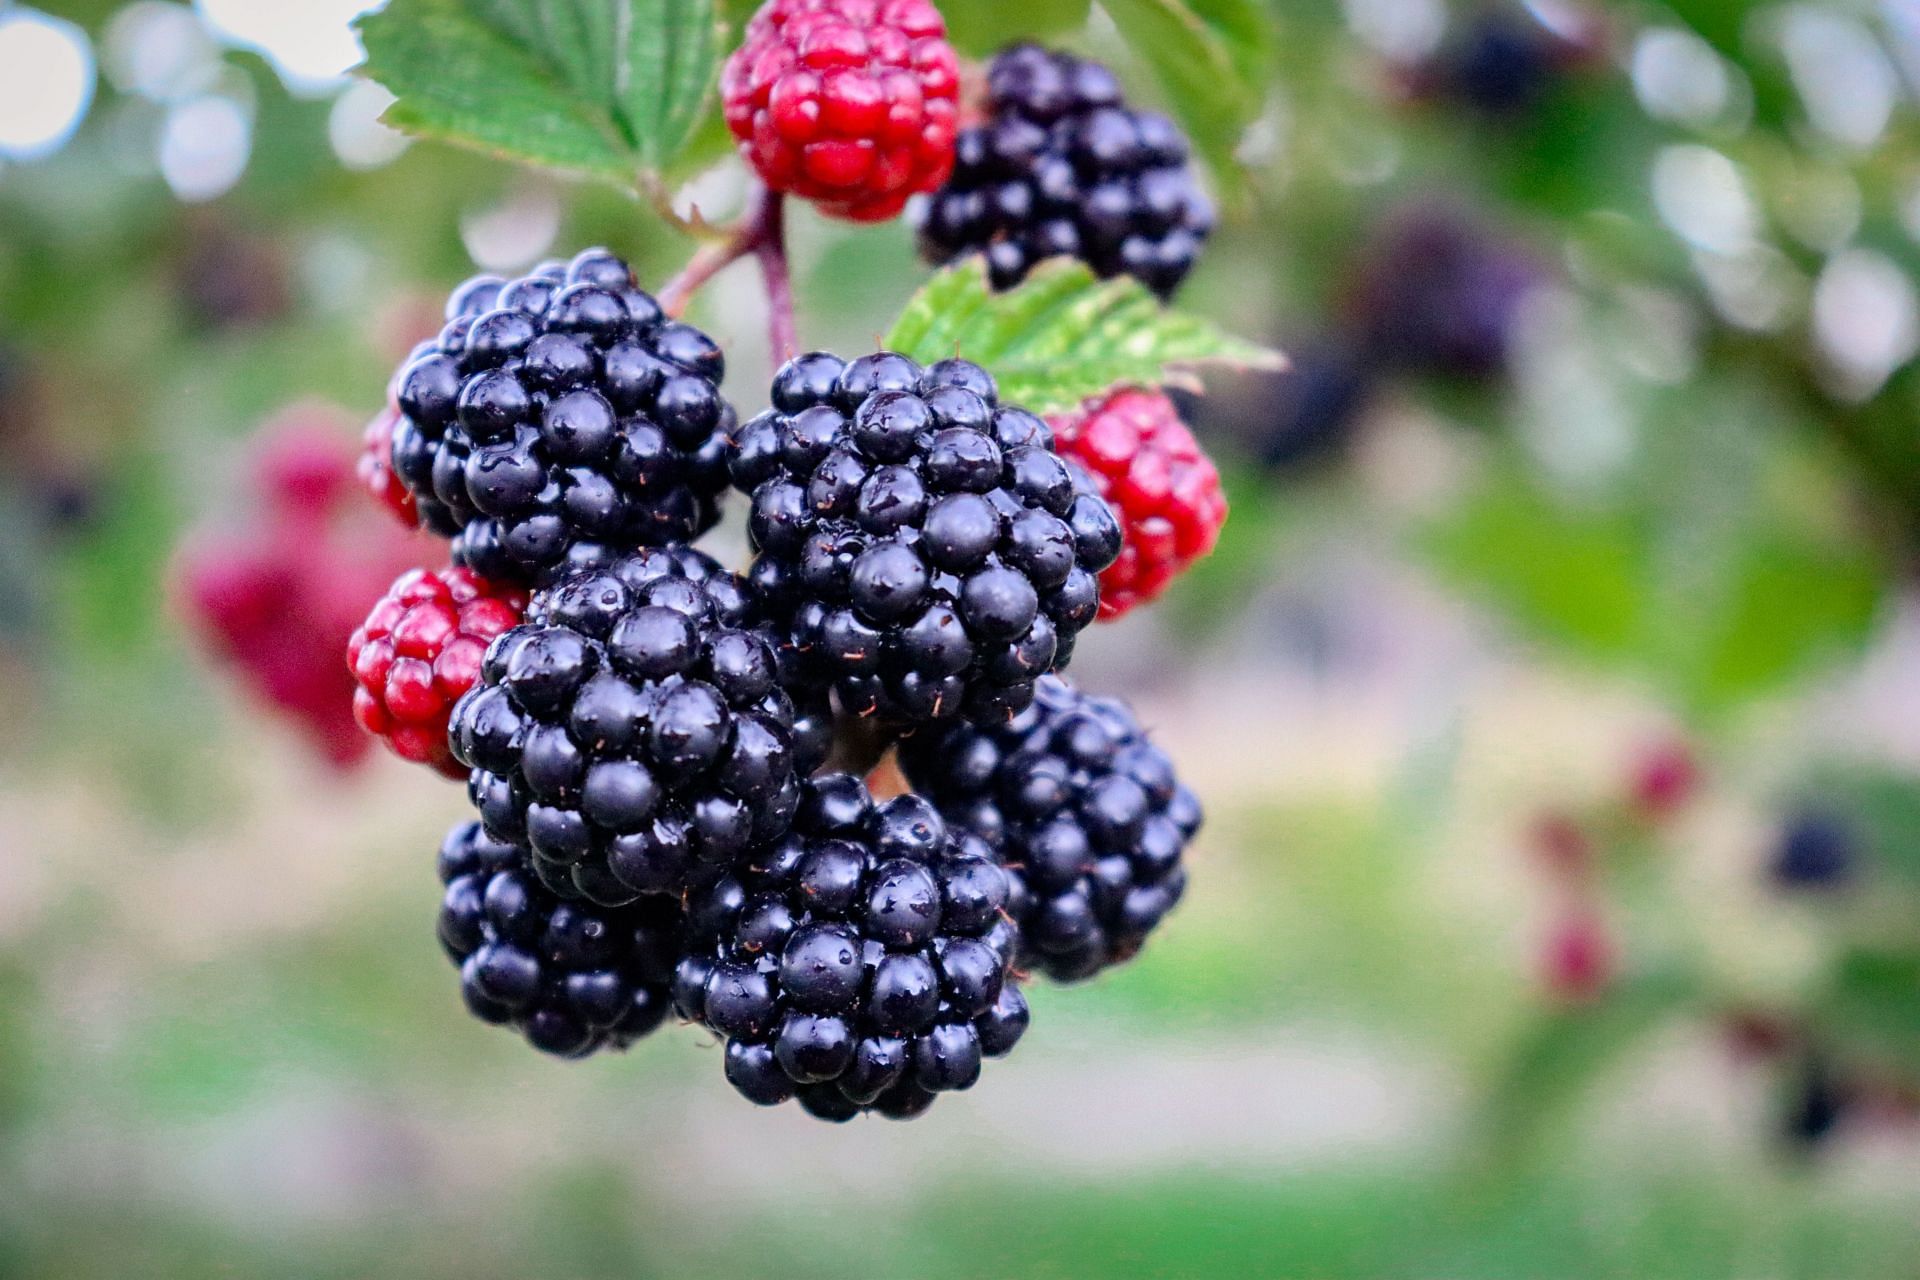 Blackberries can help bones get stronger. (Image via Unsplash/Amanda Hortiz)